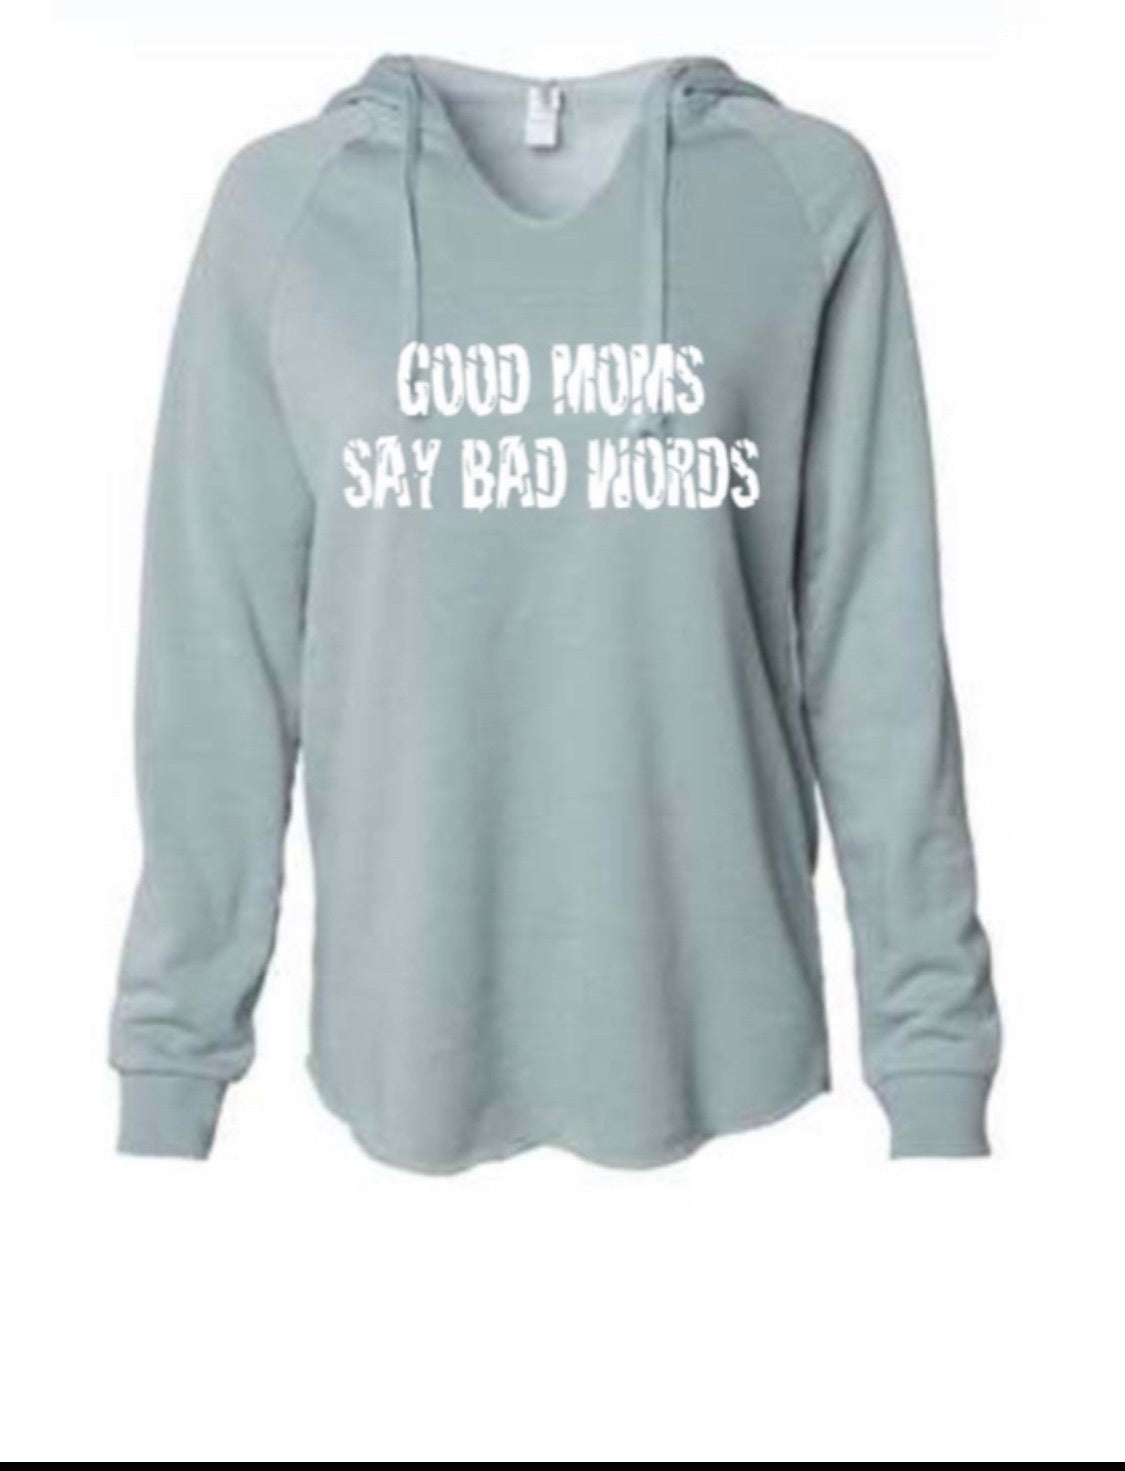 Good moms say bad words hoodie